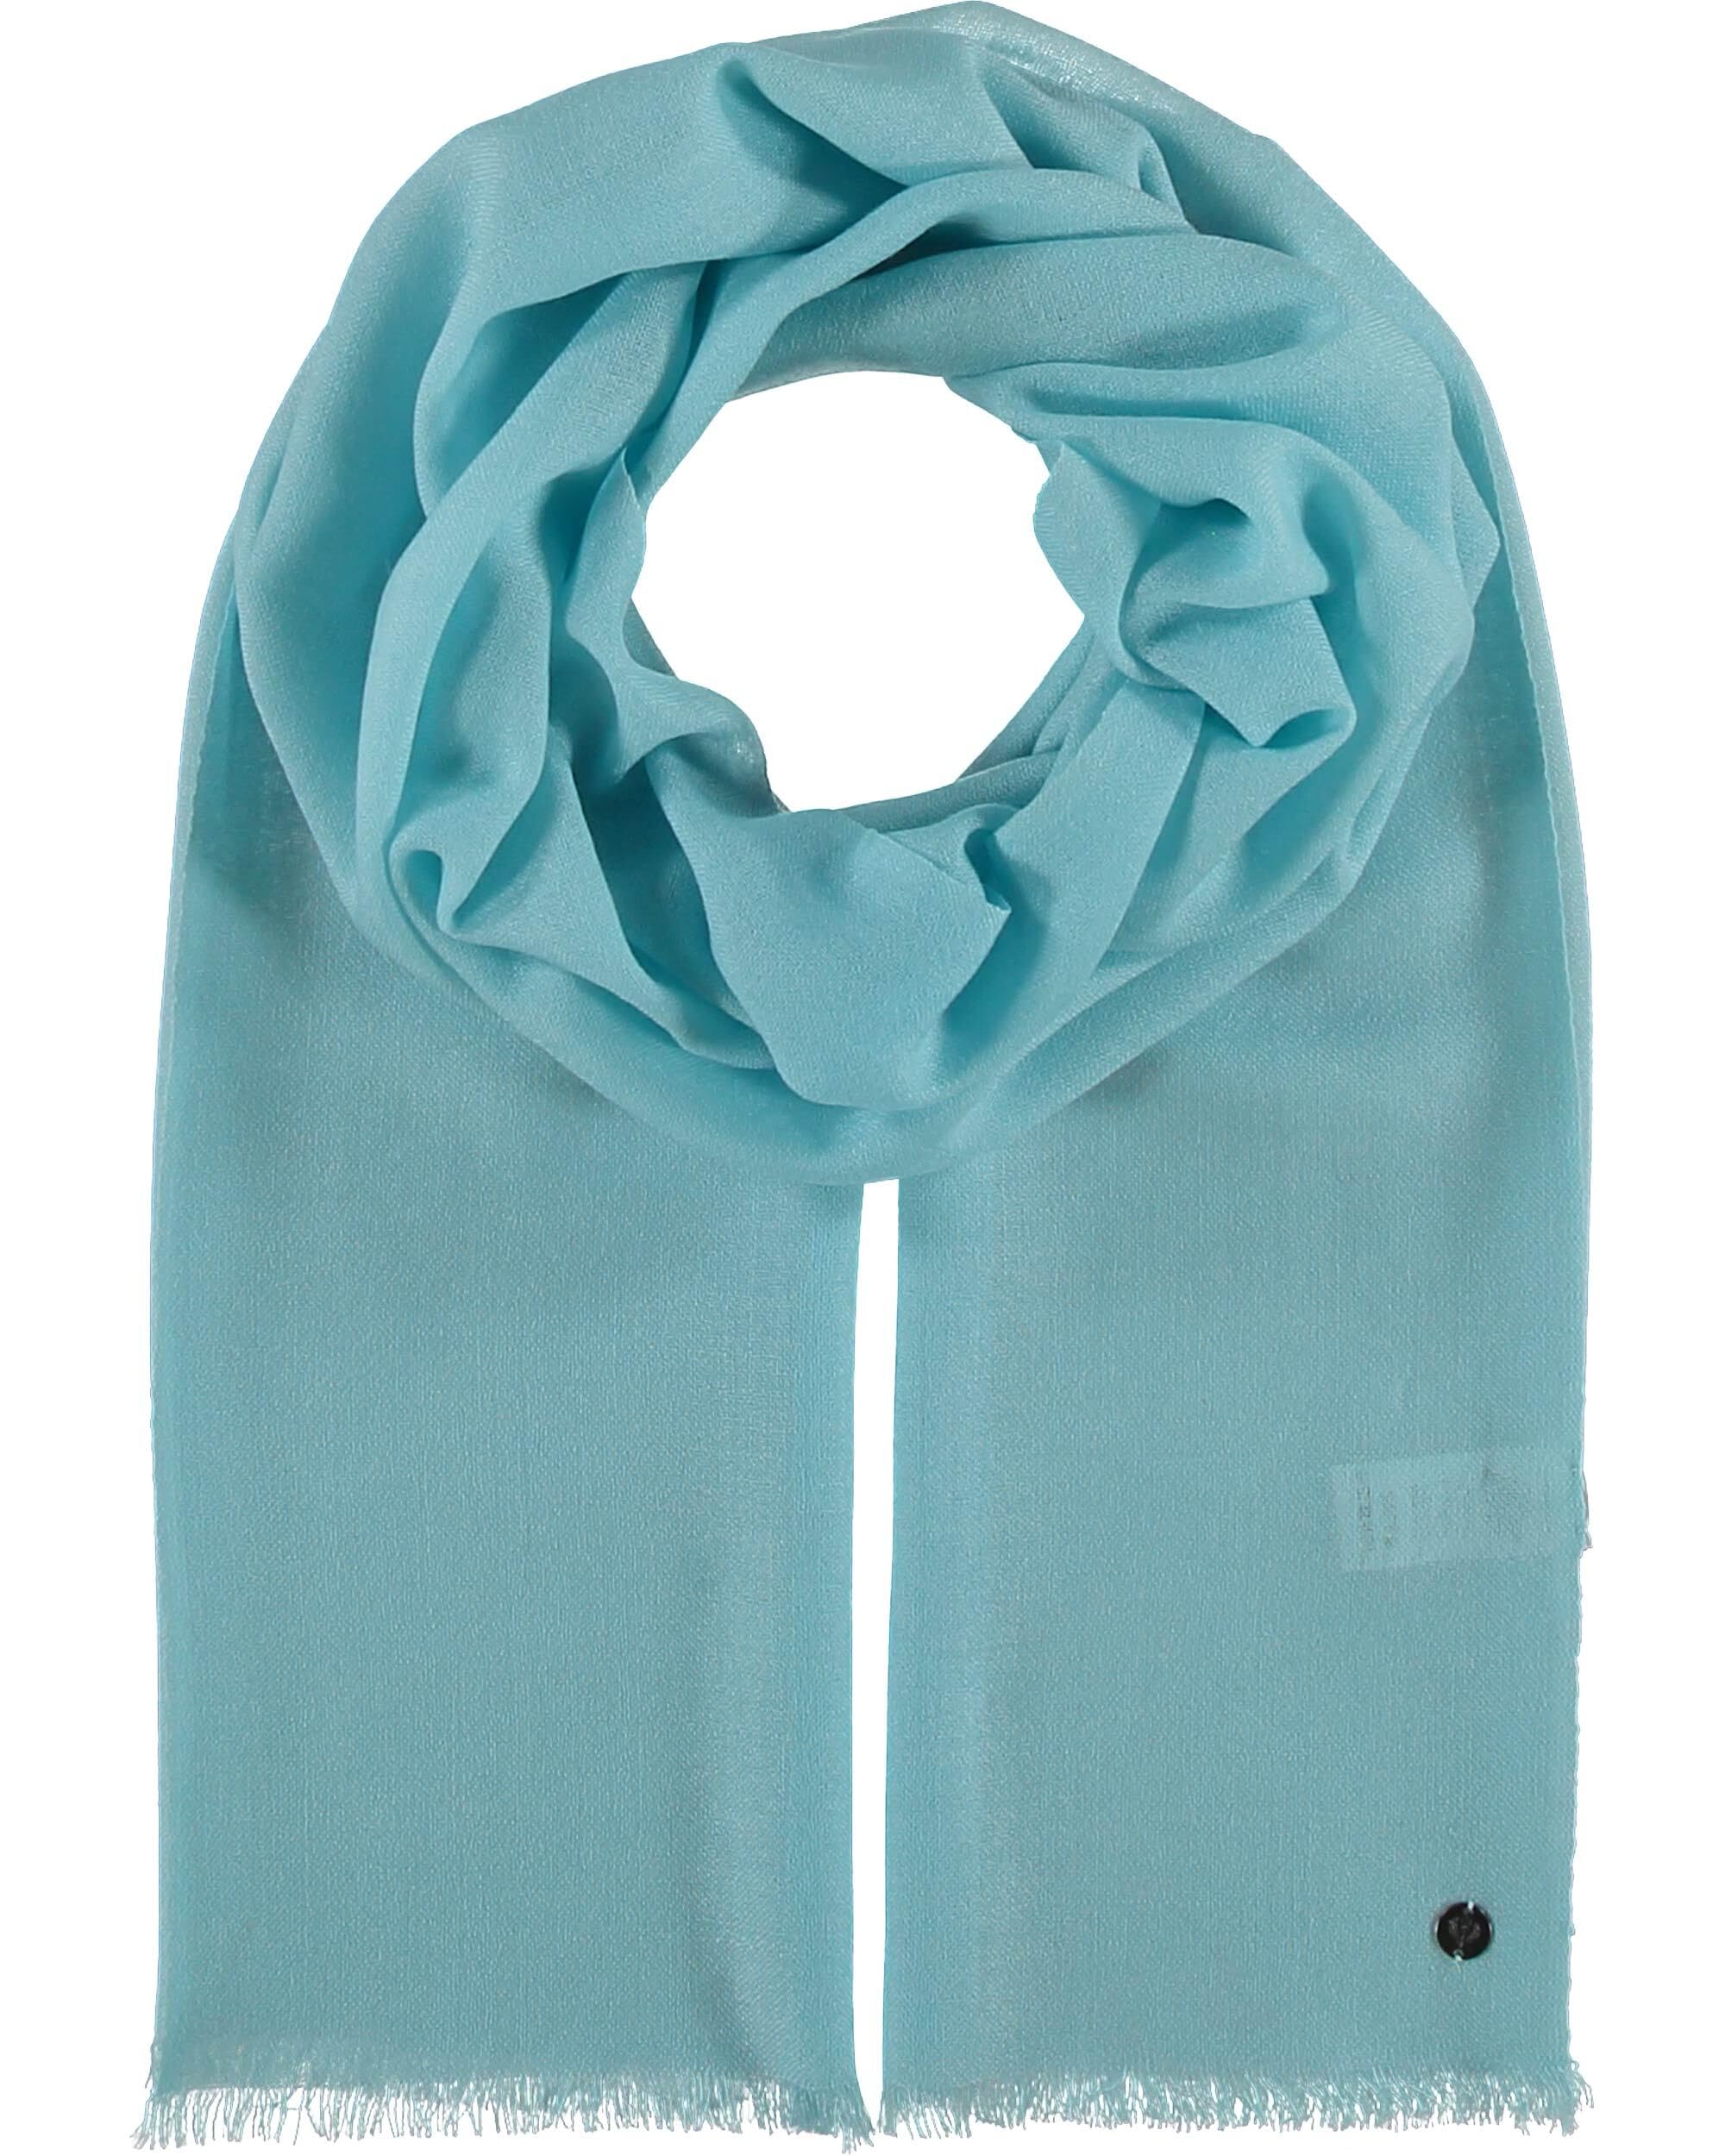 FRAAS Woll-Schal für Damen & Herren - Maße 70 x 190 cm - Damen Schal in vielen verschiedenen Farben - Perfekt für Frühling & Sommer Turquoise